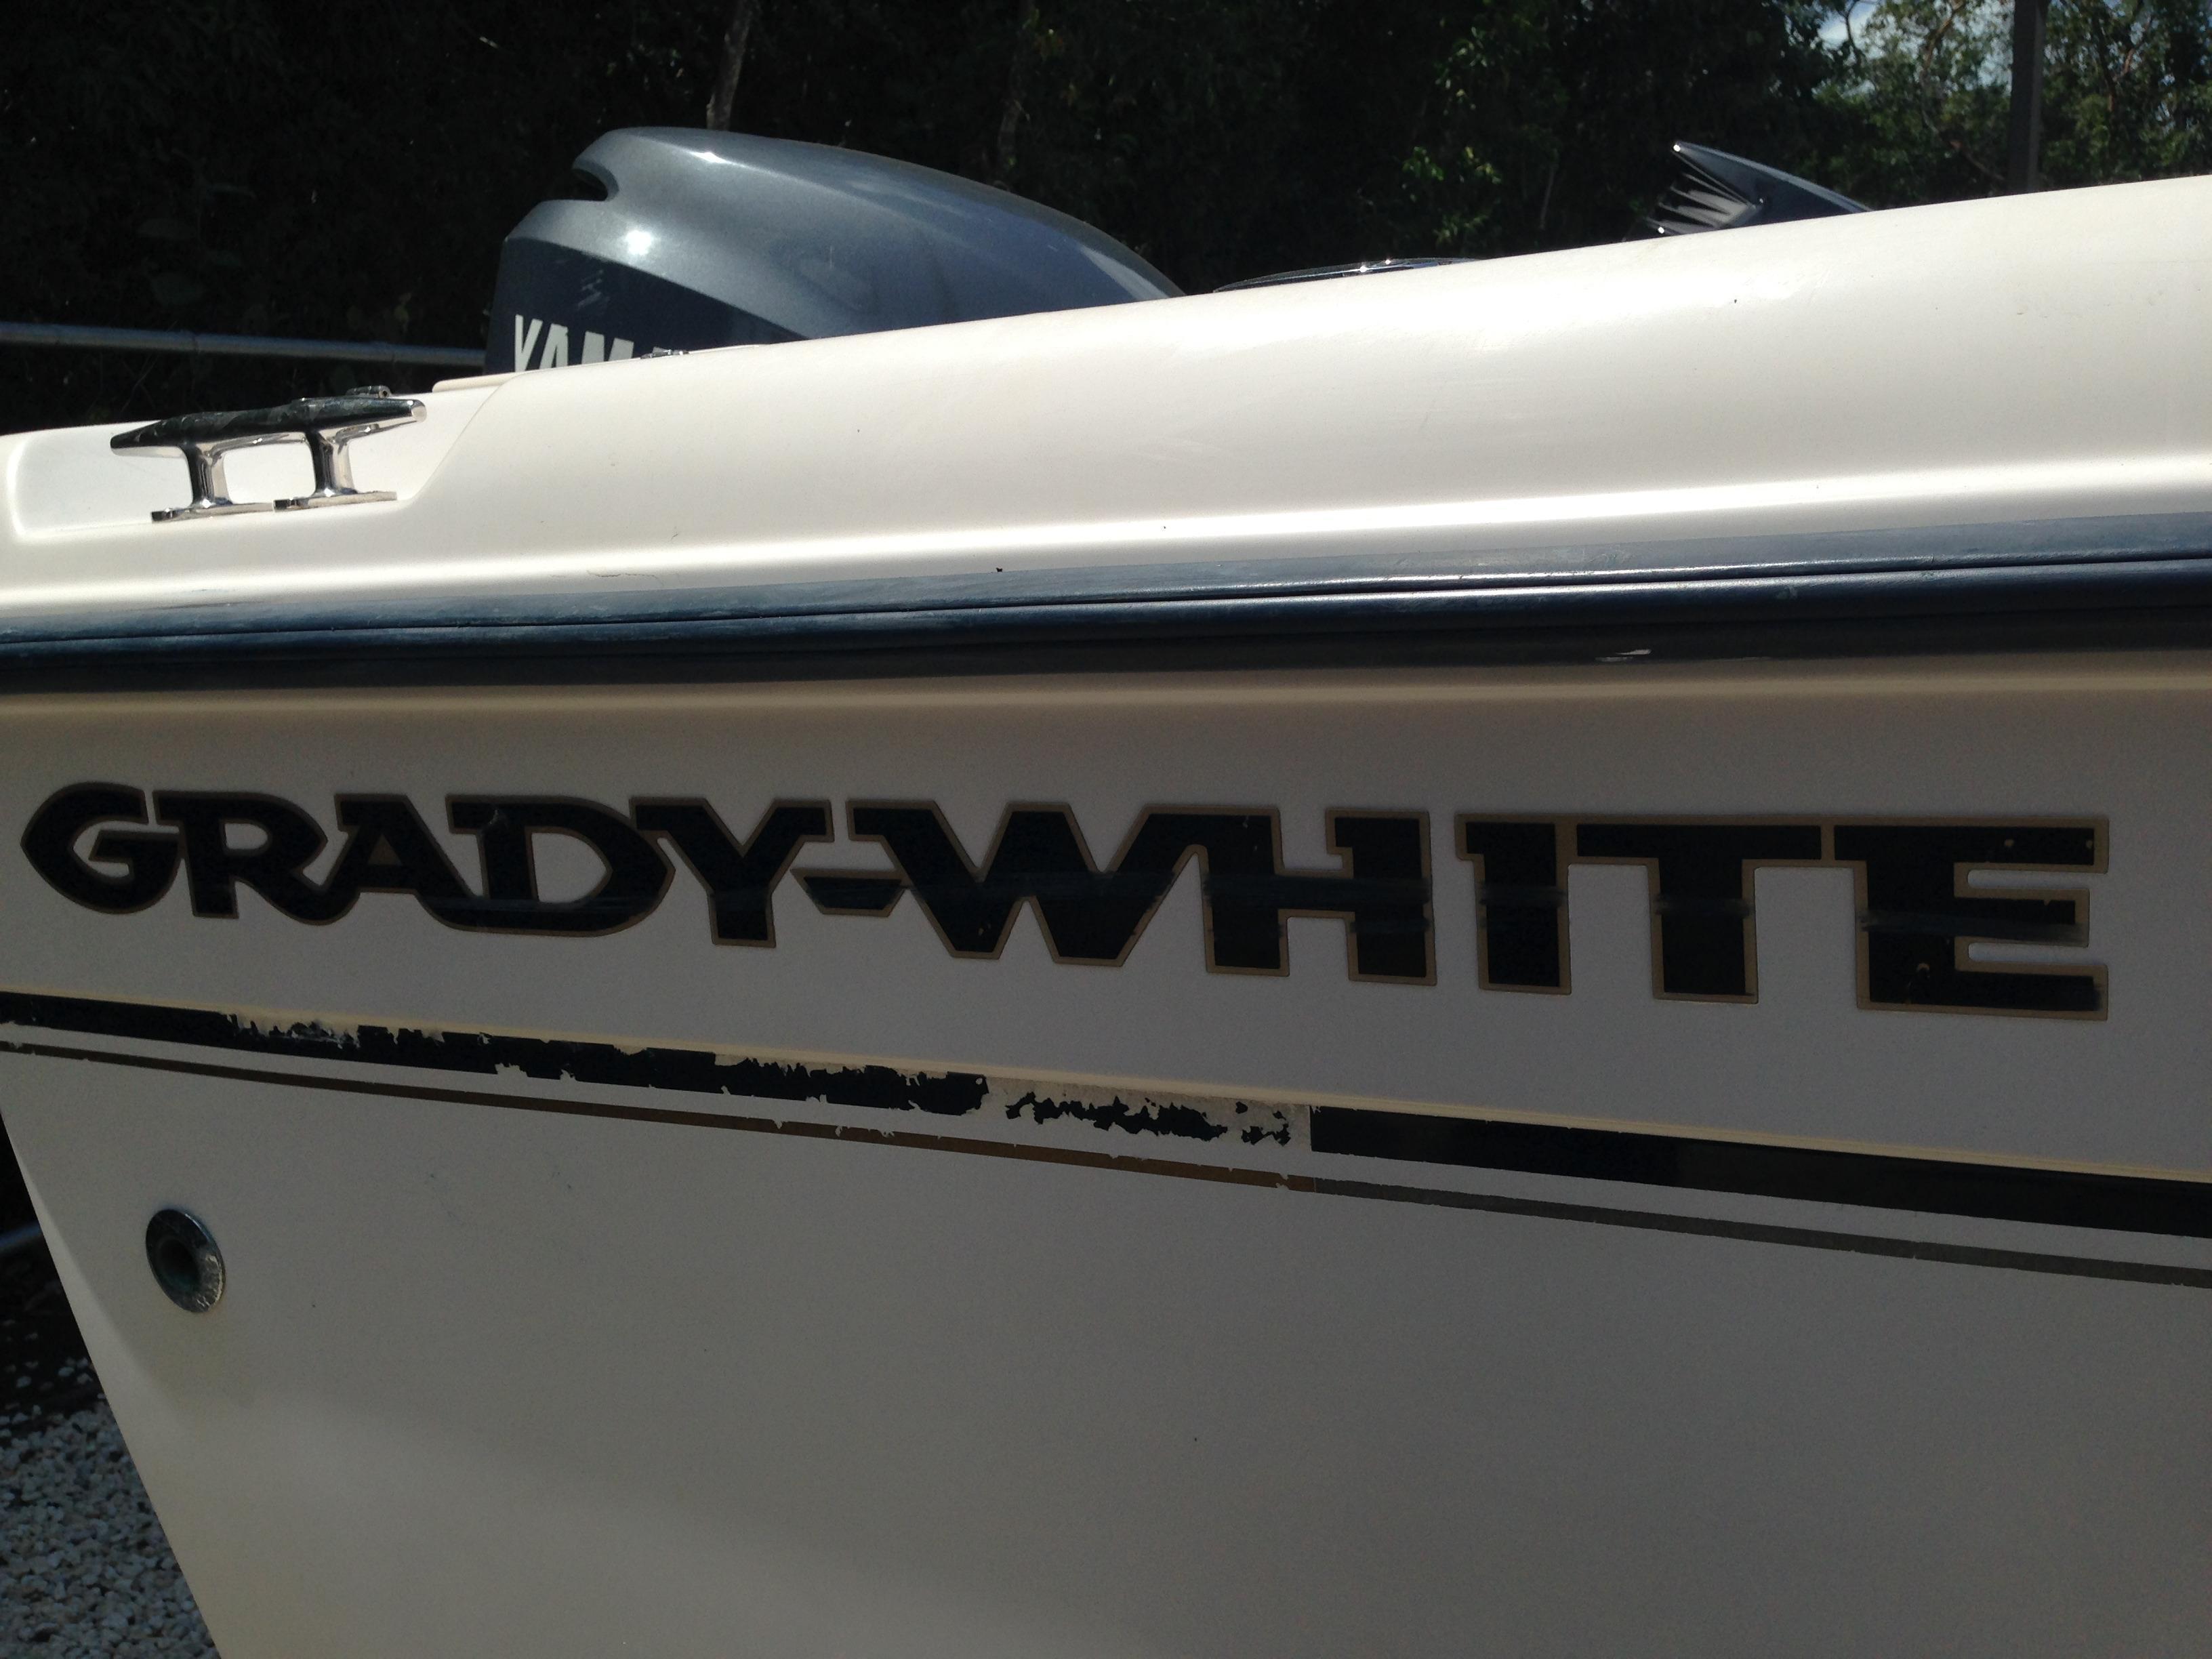 Grady-White 222 FISHERMAN, Miami